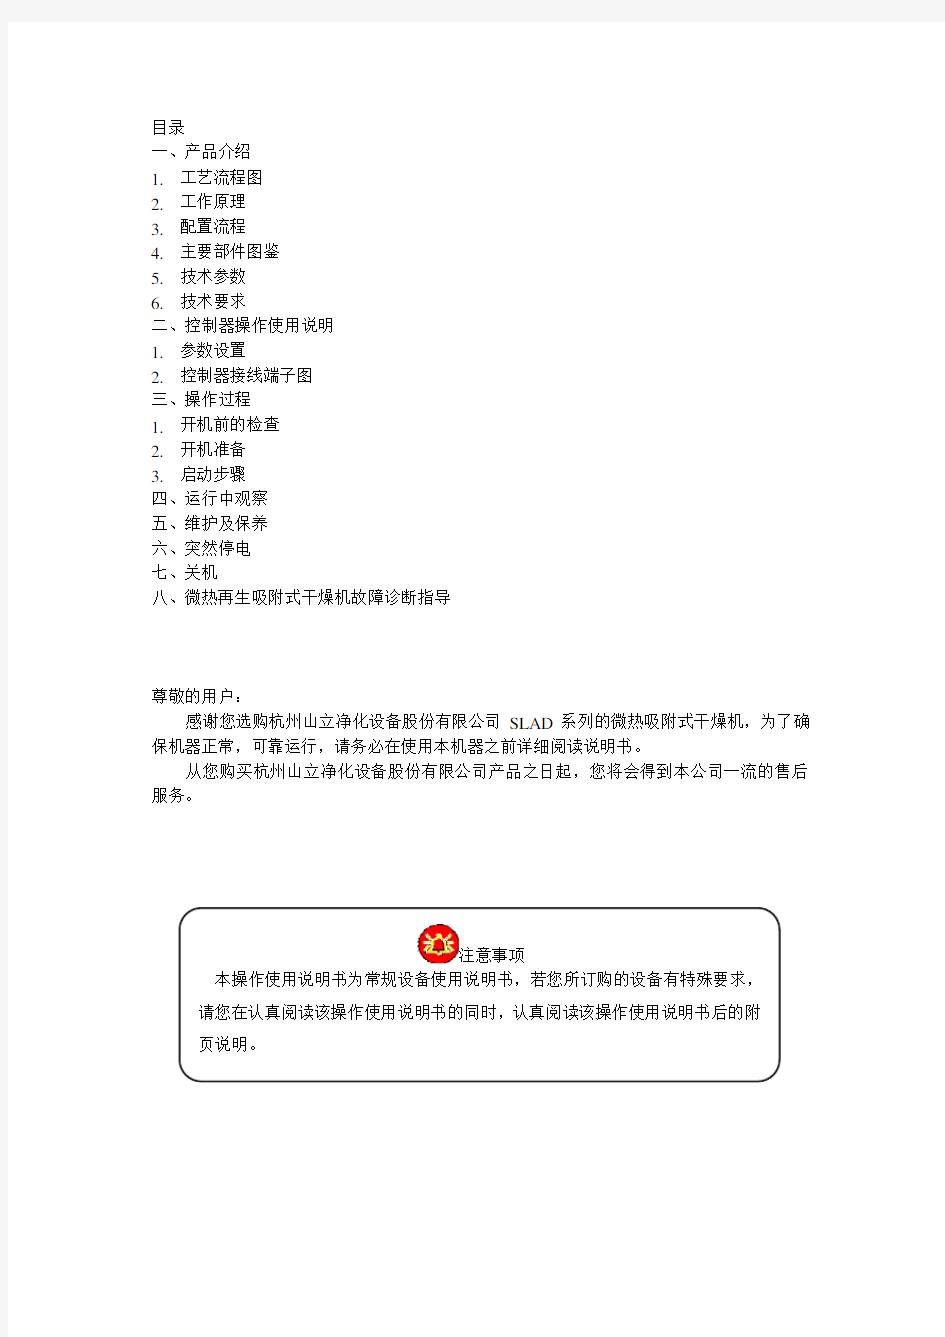 微热吸干机中文说明书(2012.07.14)